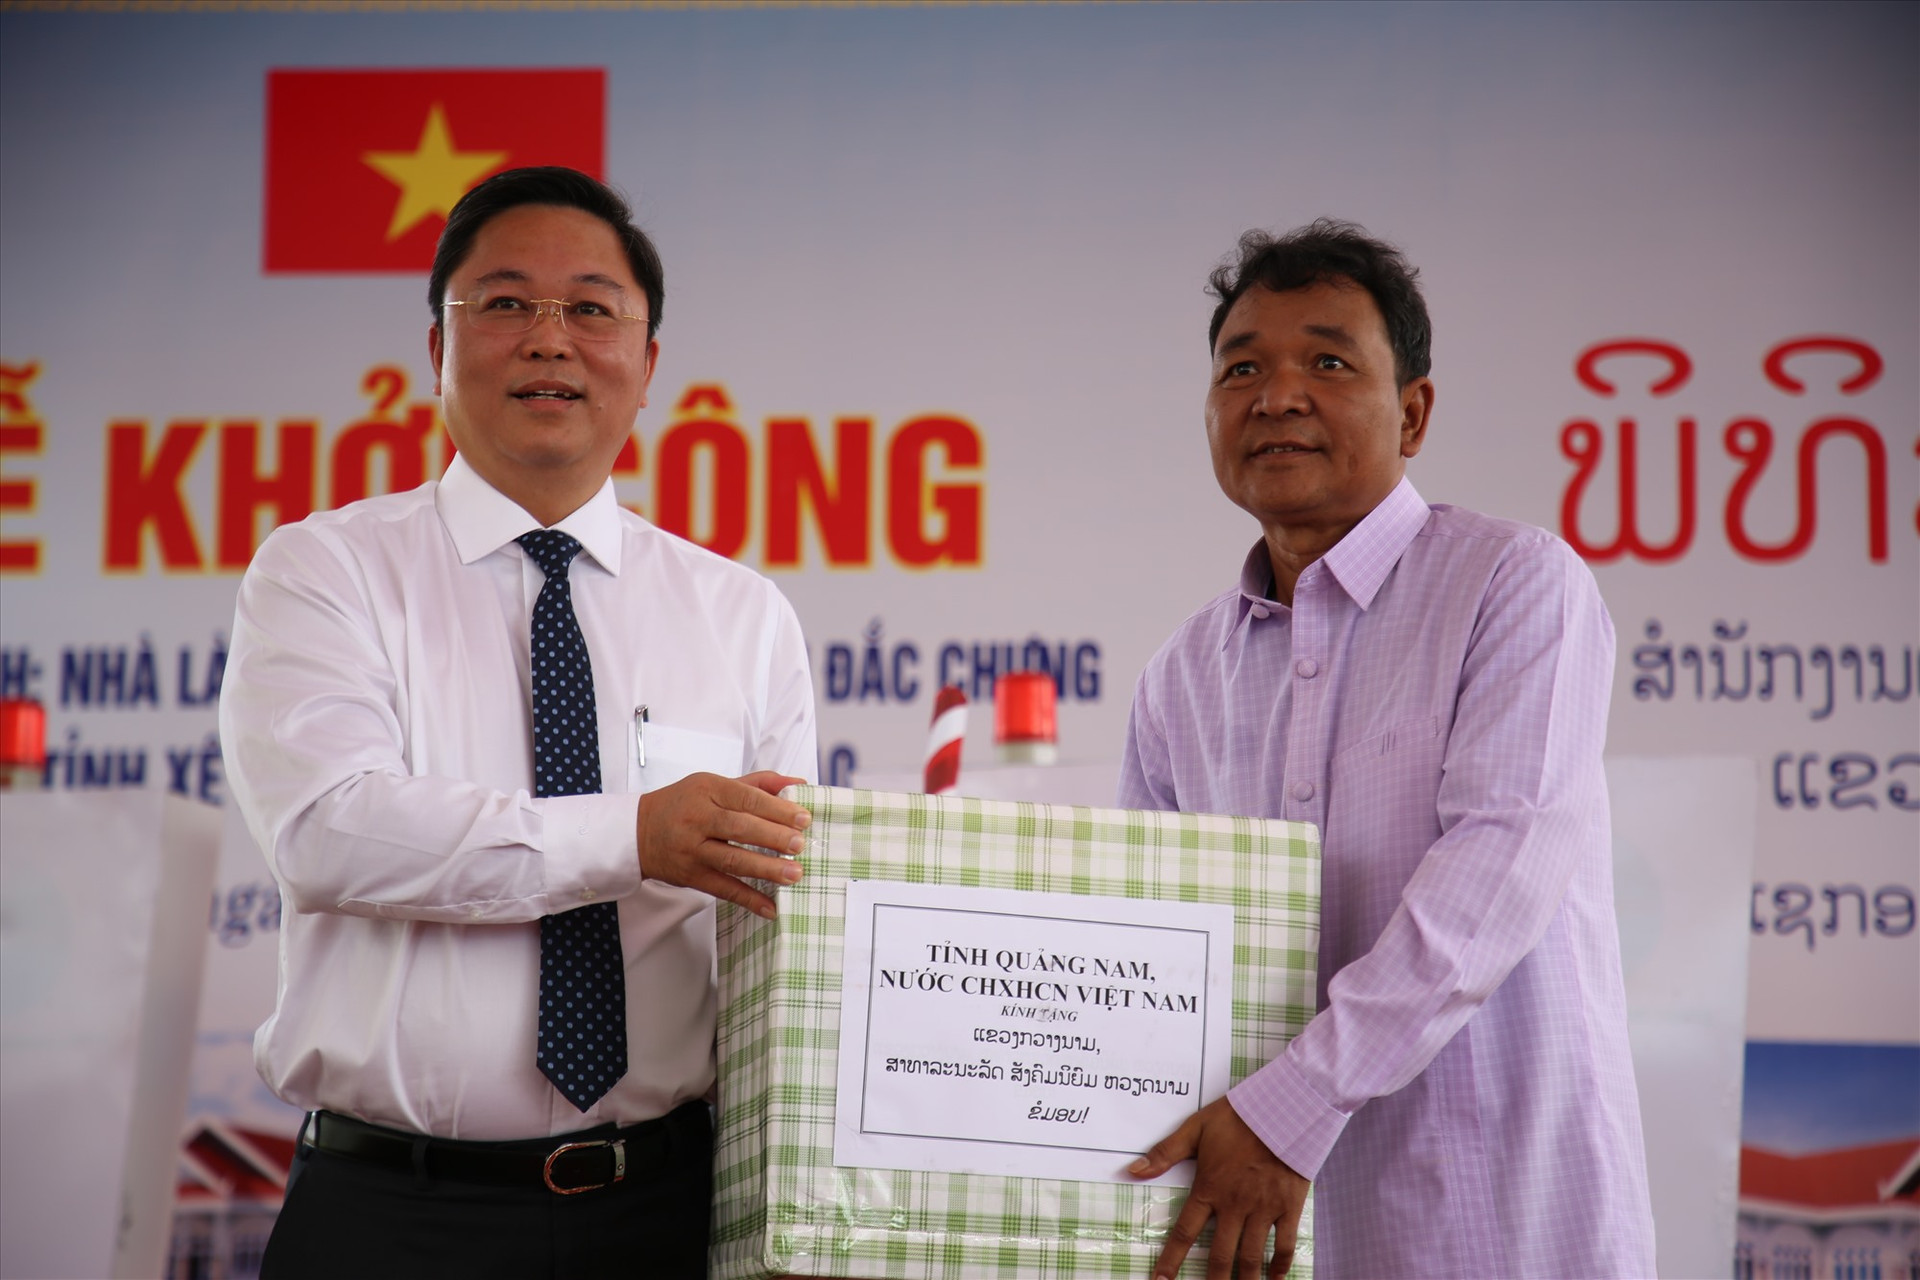 Chủ tịch UBND tỉnh Lê Trí Thanh tặng quà hữu nghị cho đại diện huyện Đắc Chưng. Ảnh: A.N